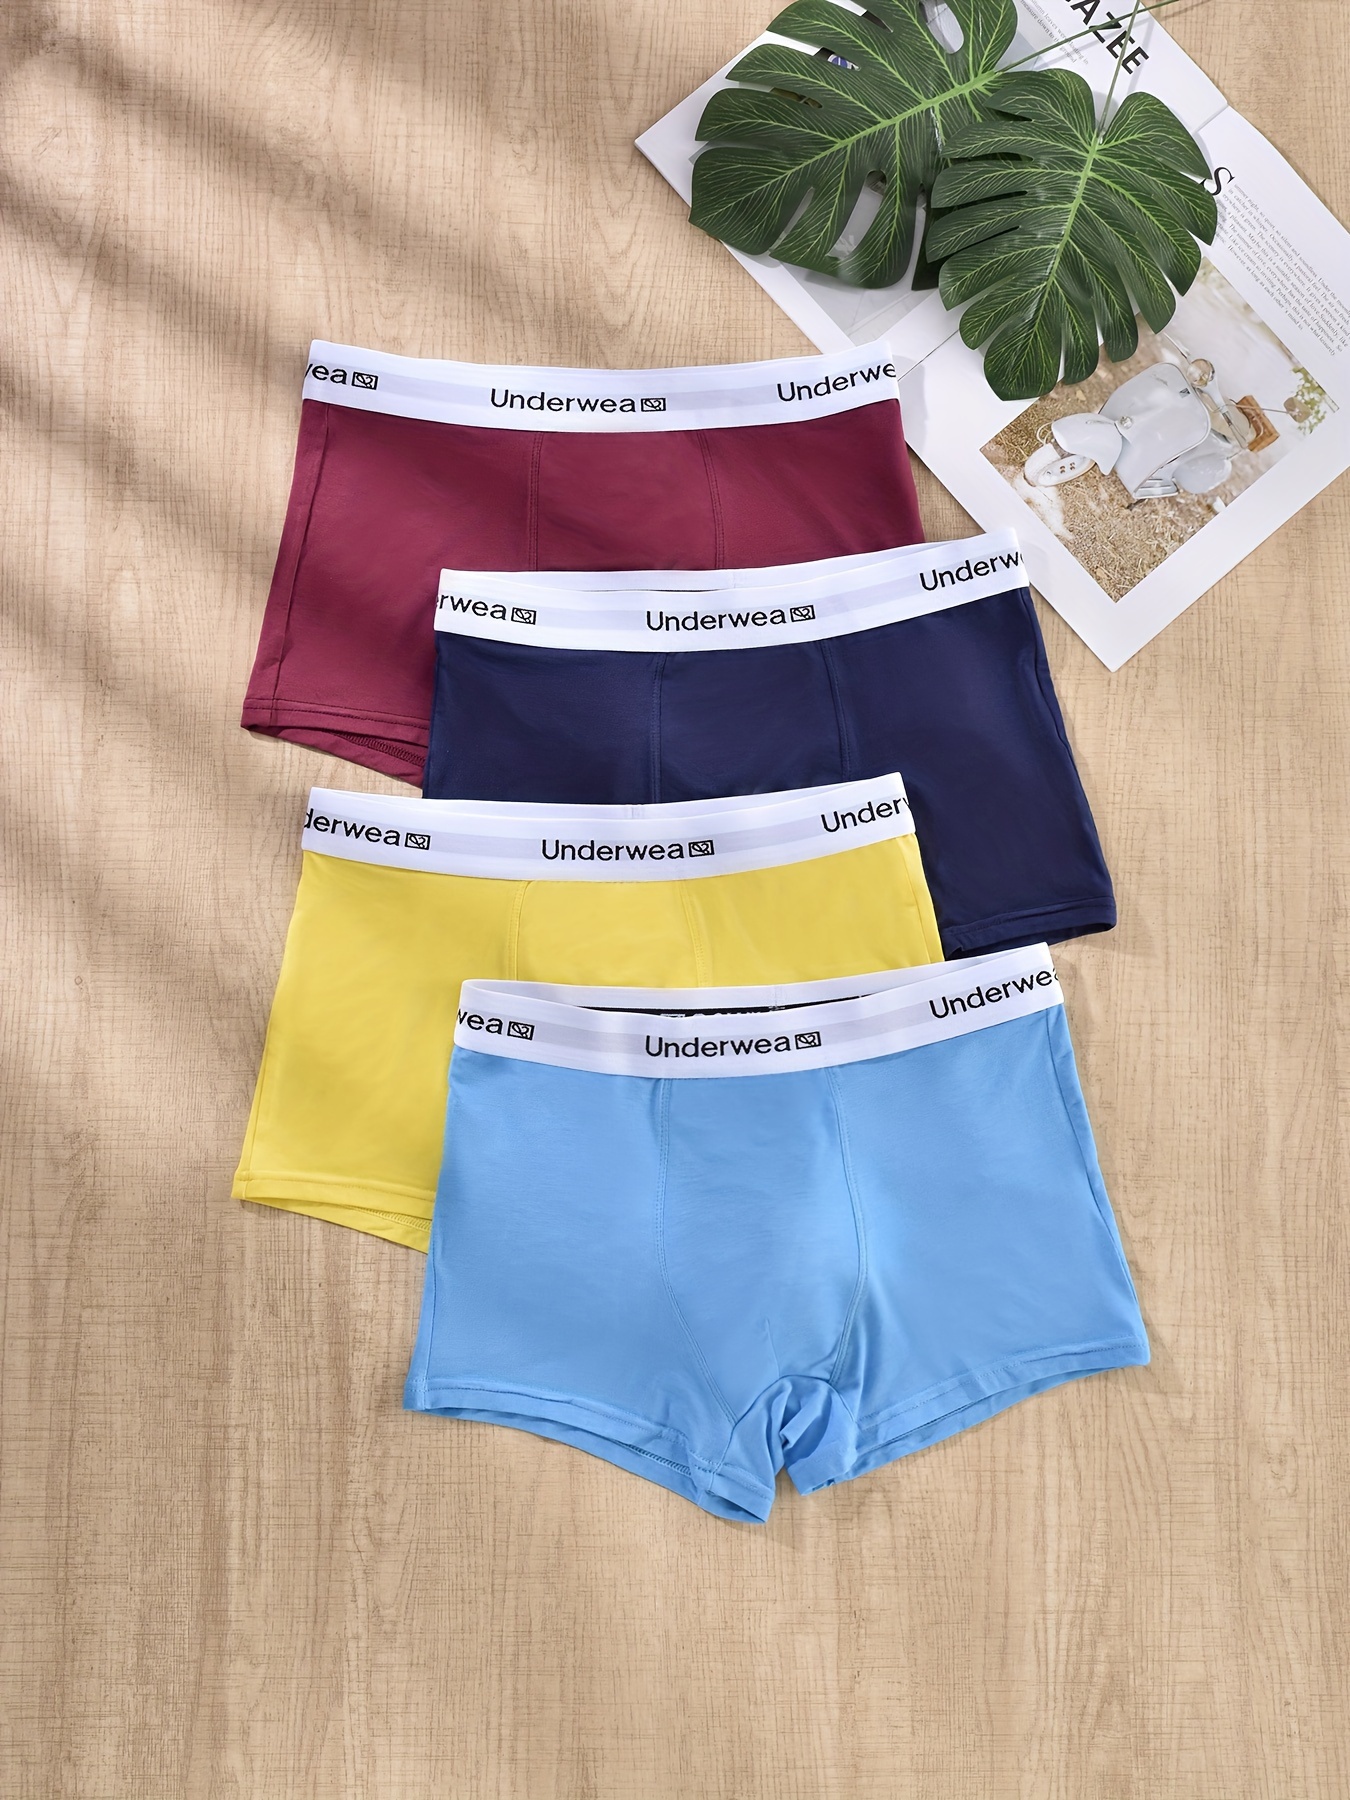 Hello Underwear - Temu Canada